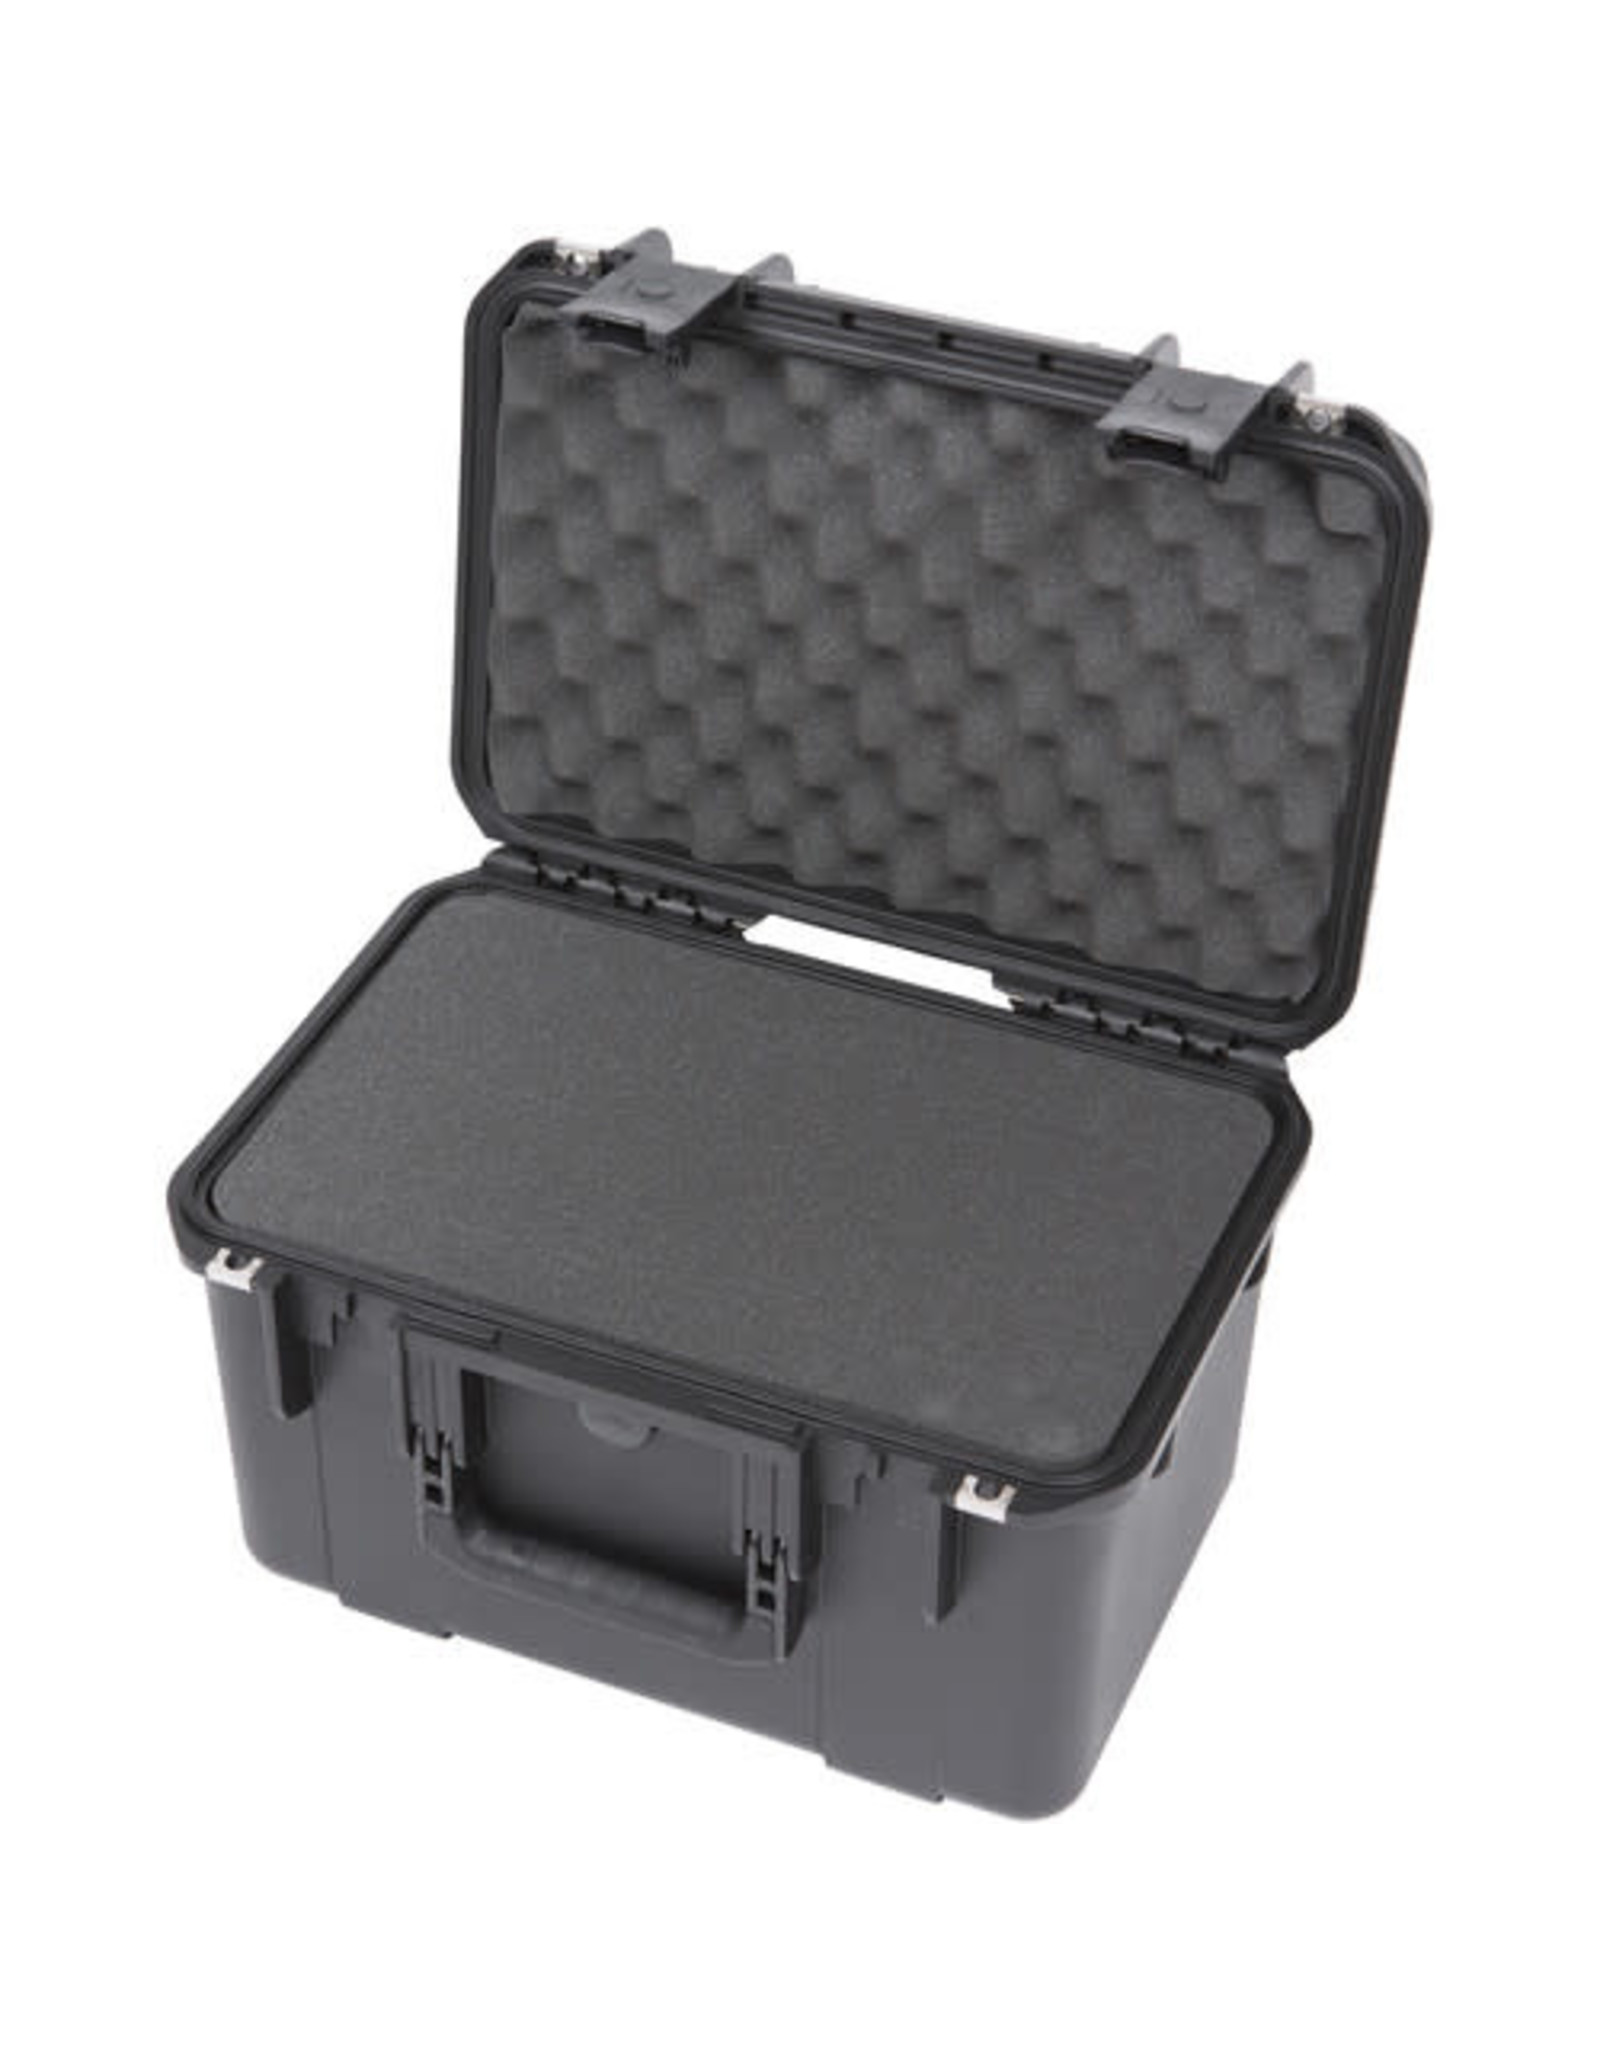 SKB Cases SKB 3i Series 3i-1610-10B-C Case with cubed Foam